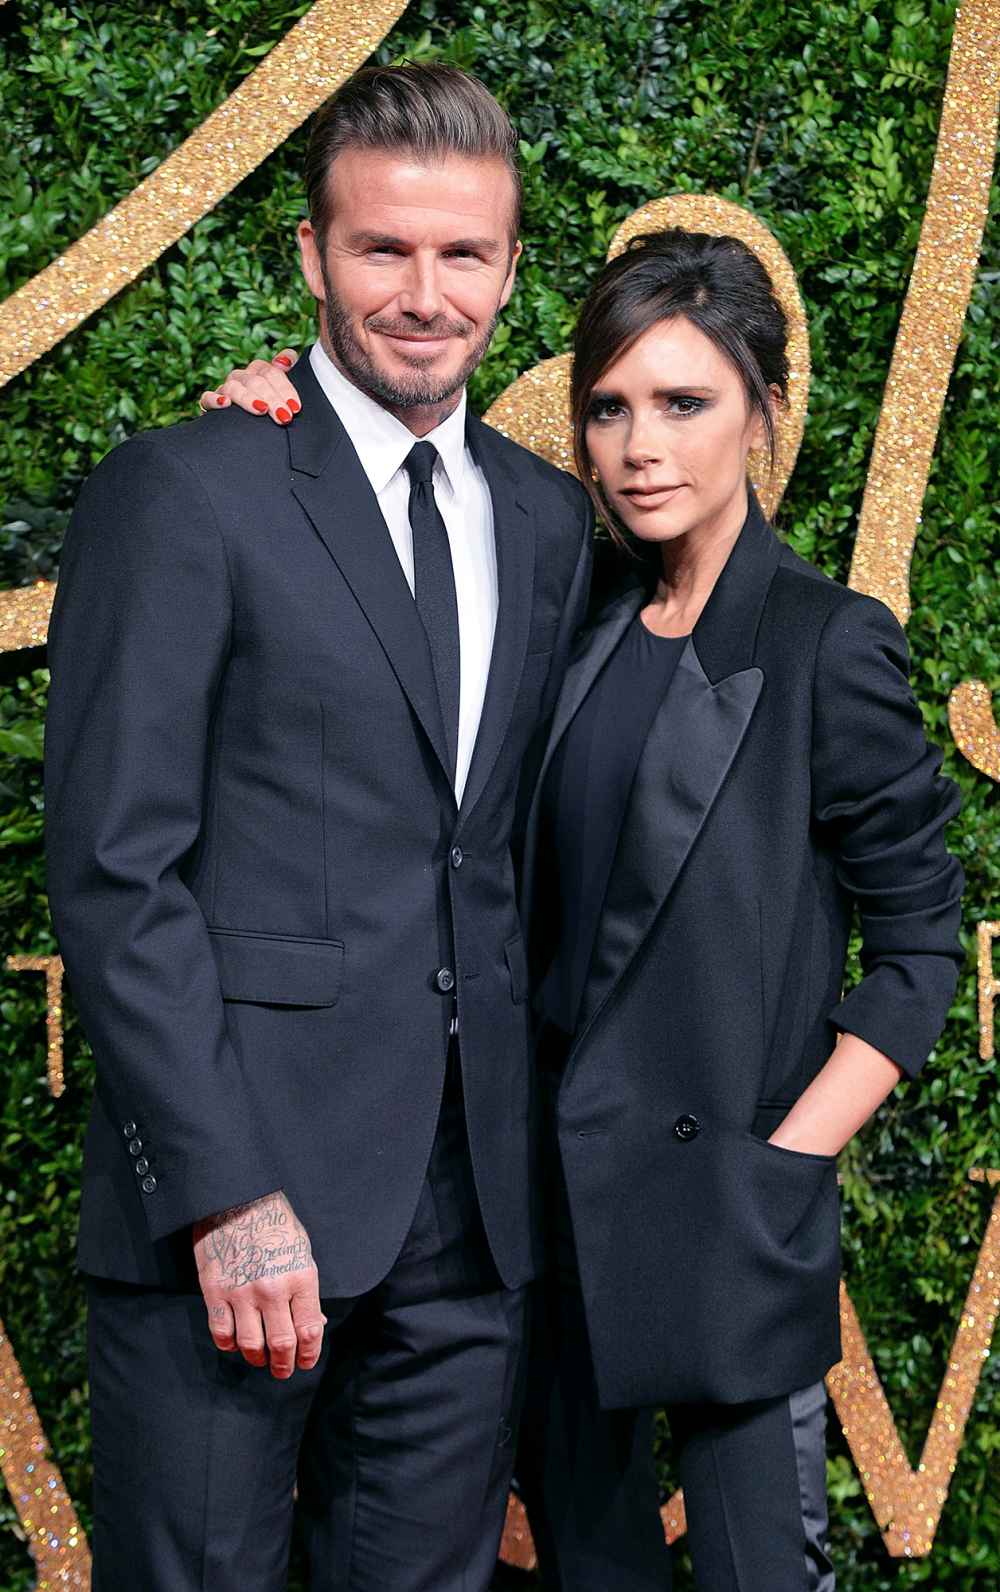 Victoria Beckham Addresses David Beckham Divorce Rumors: 'We're Stronger Together'